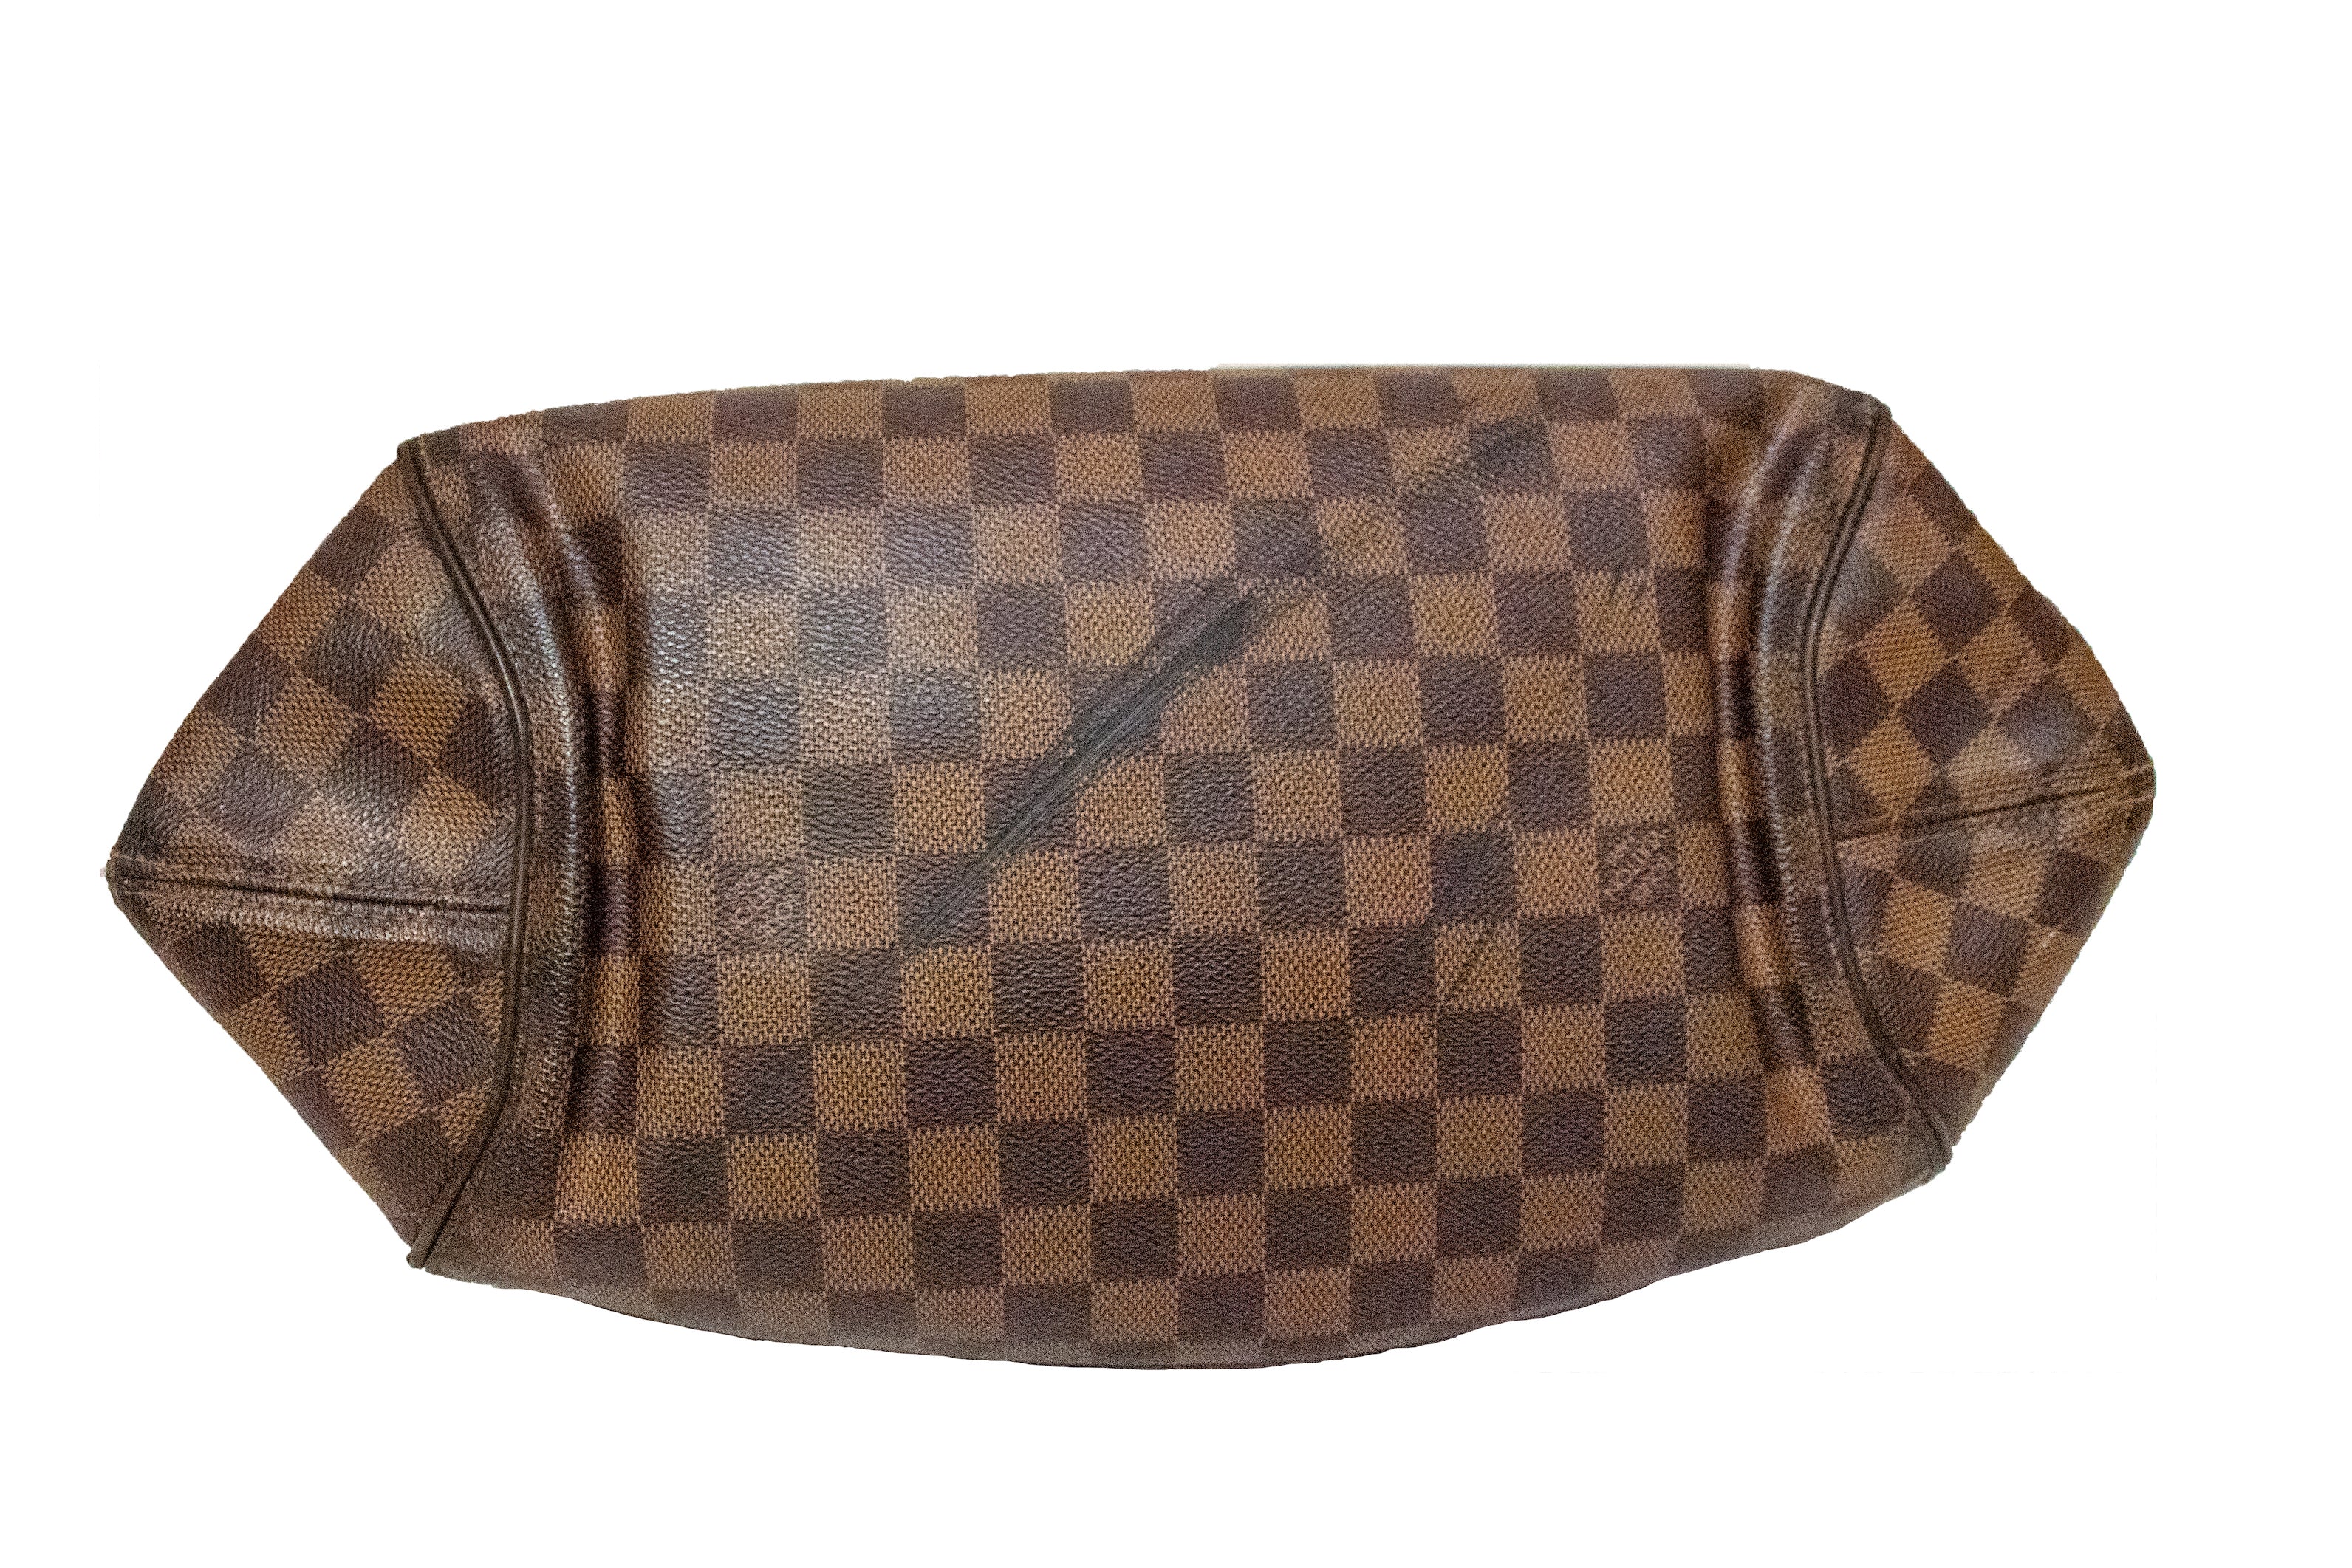 Authentic Louis Vuitton Damier Ebene Sistina GM Shoulder Bag